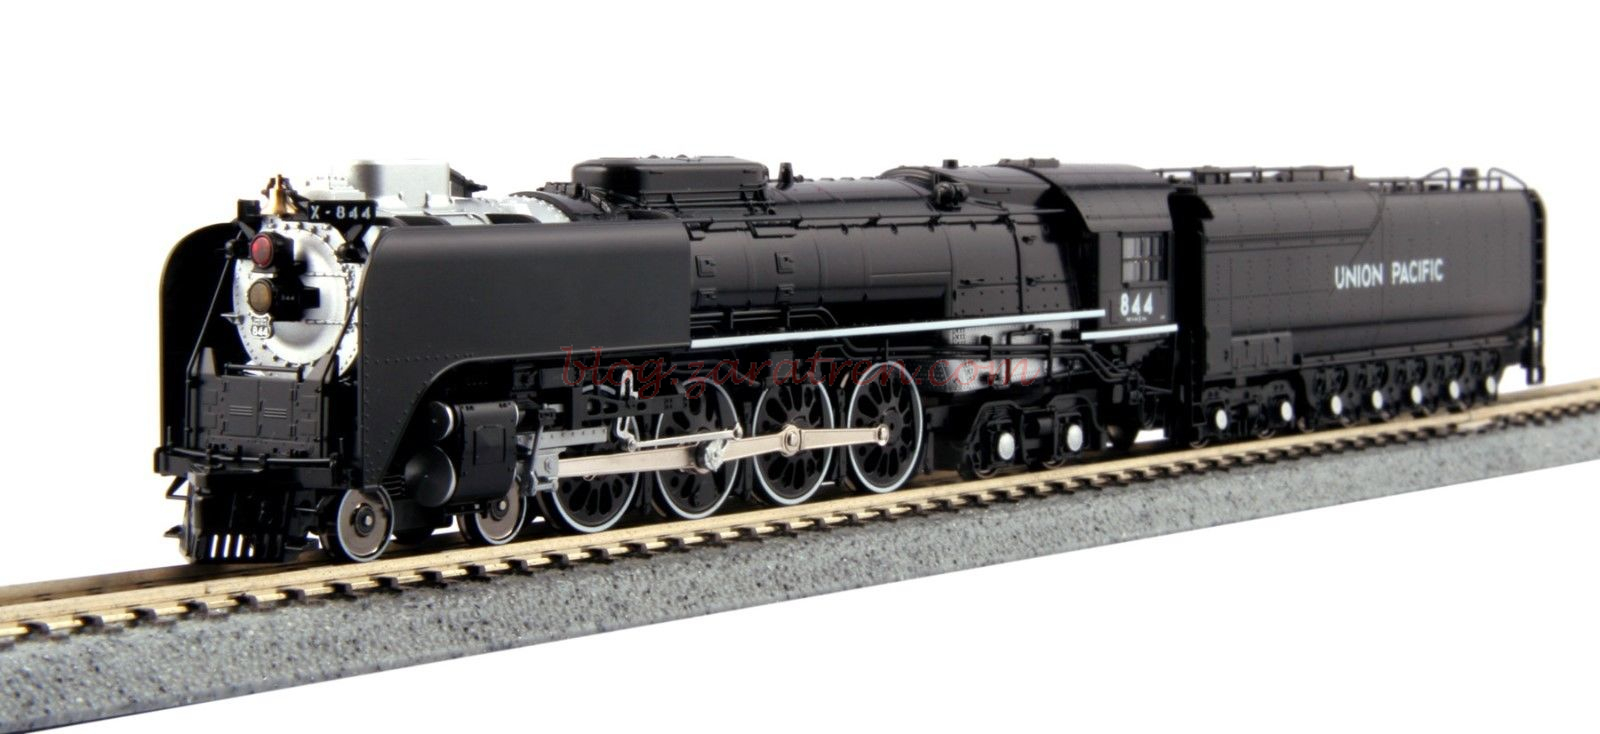 Kato – Locomotora de vapor Unión Pacific FEF-3 ( 844 ), Escala N, Ref: 12605-2.